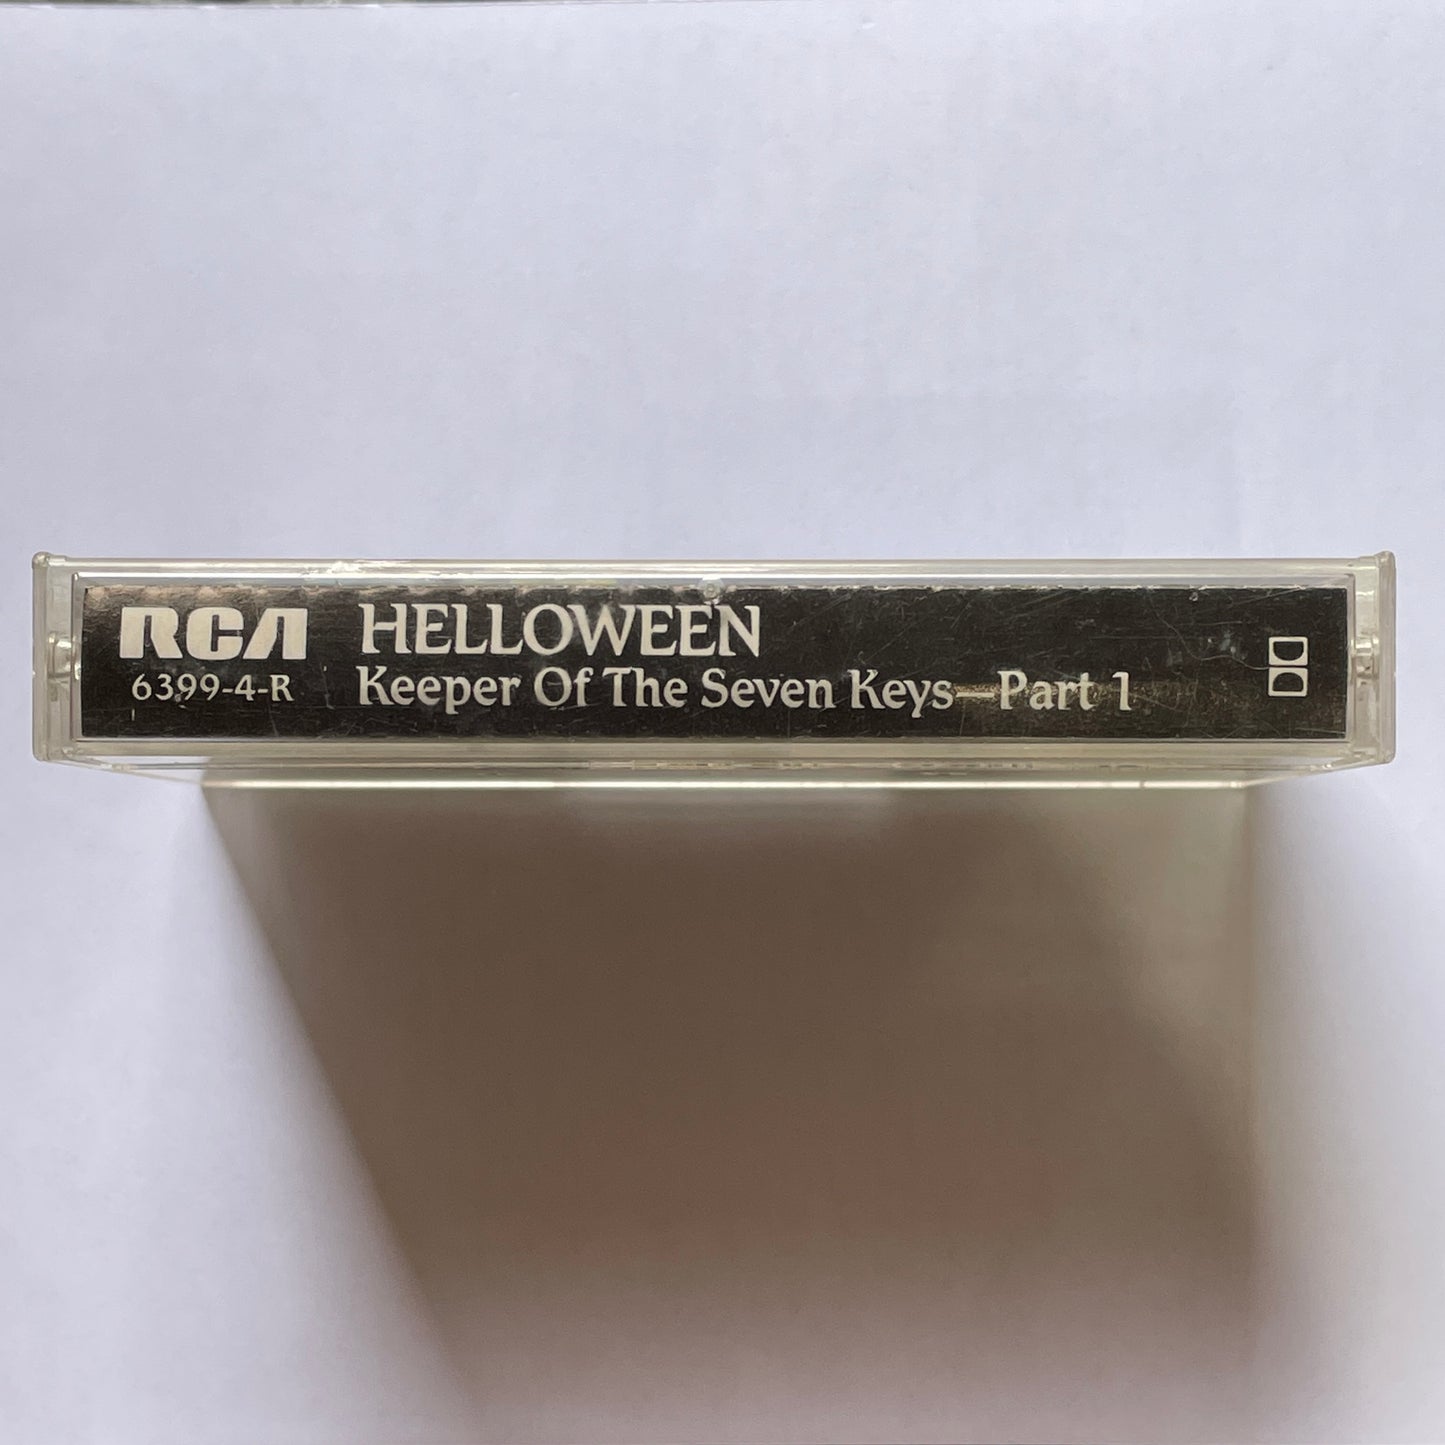 Helloween - Keeper of the Seven Keys Part 1 original cassette tape